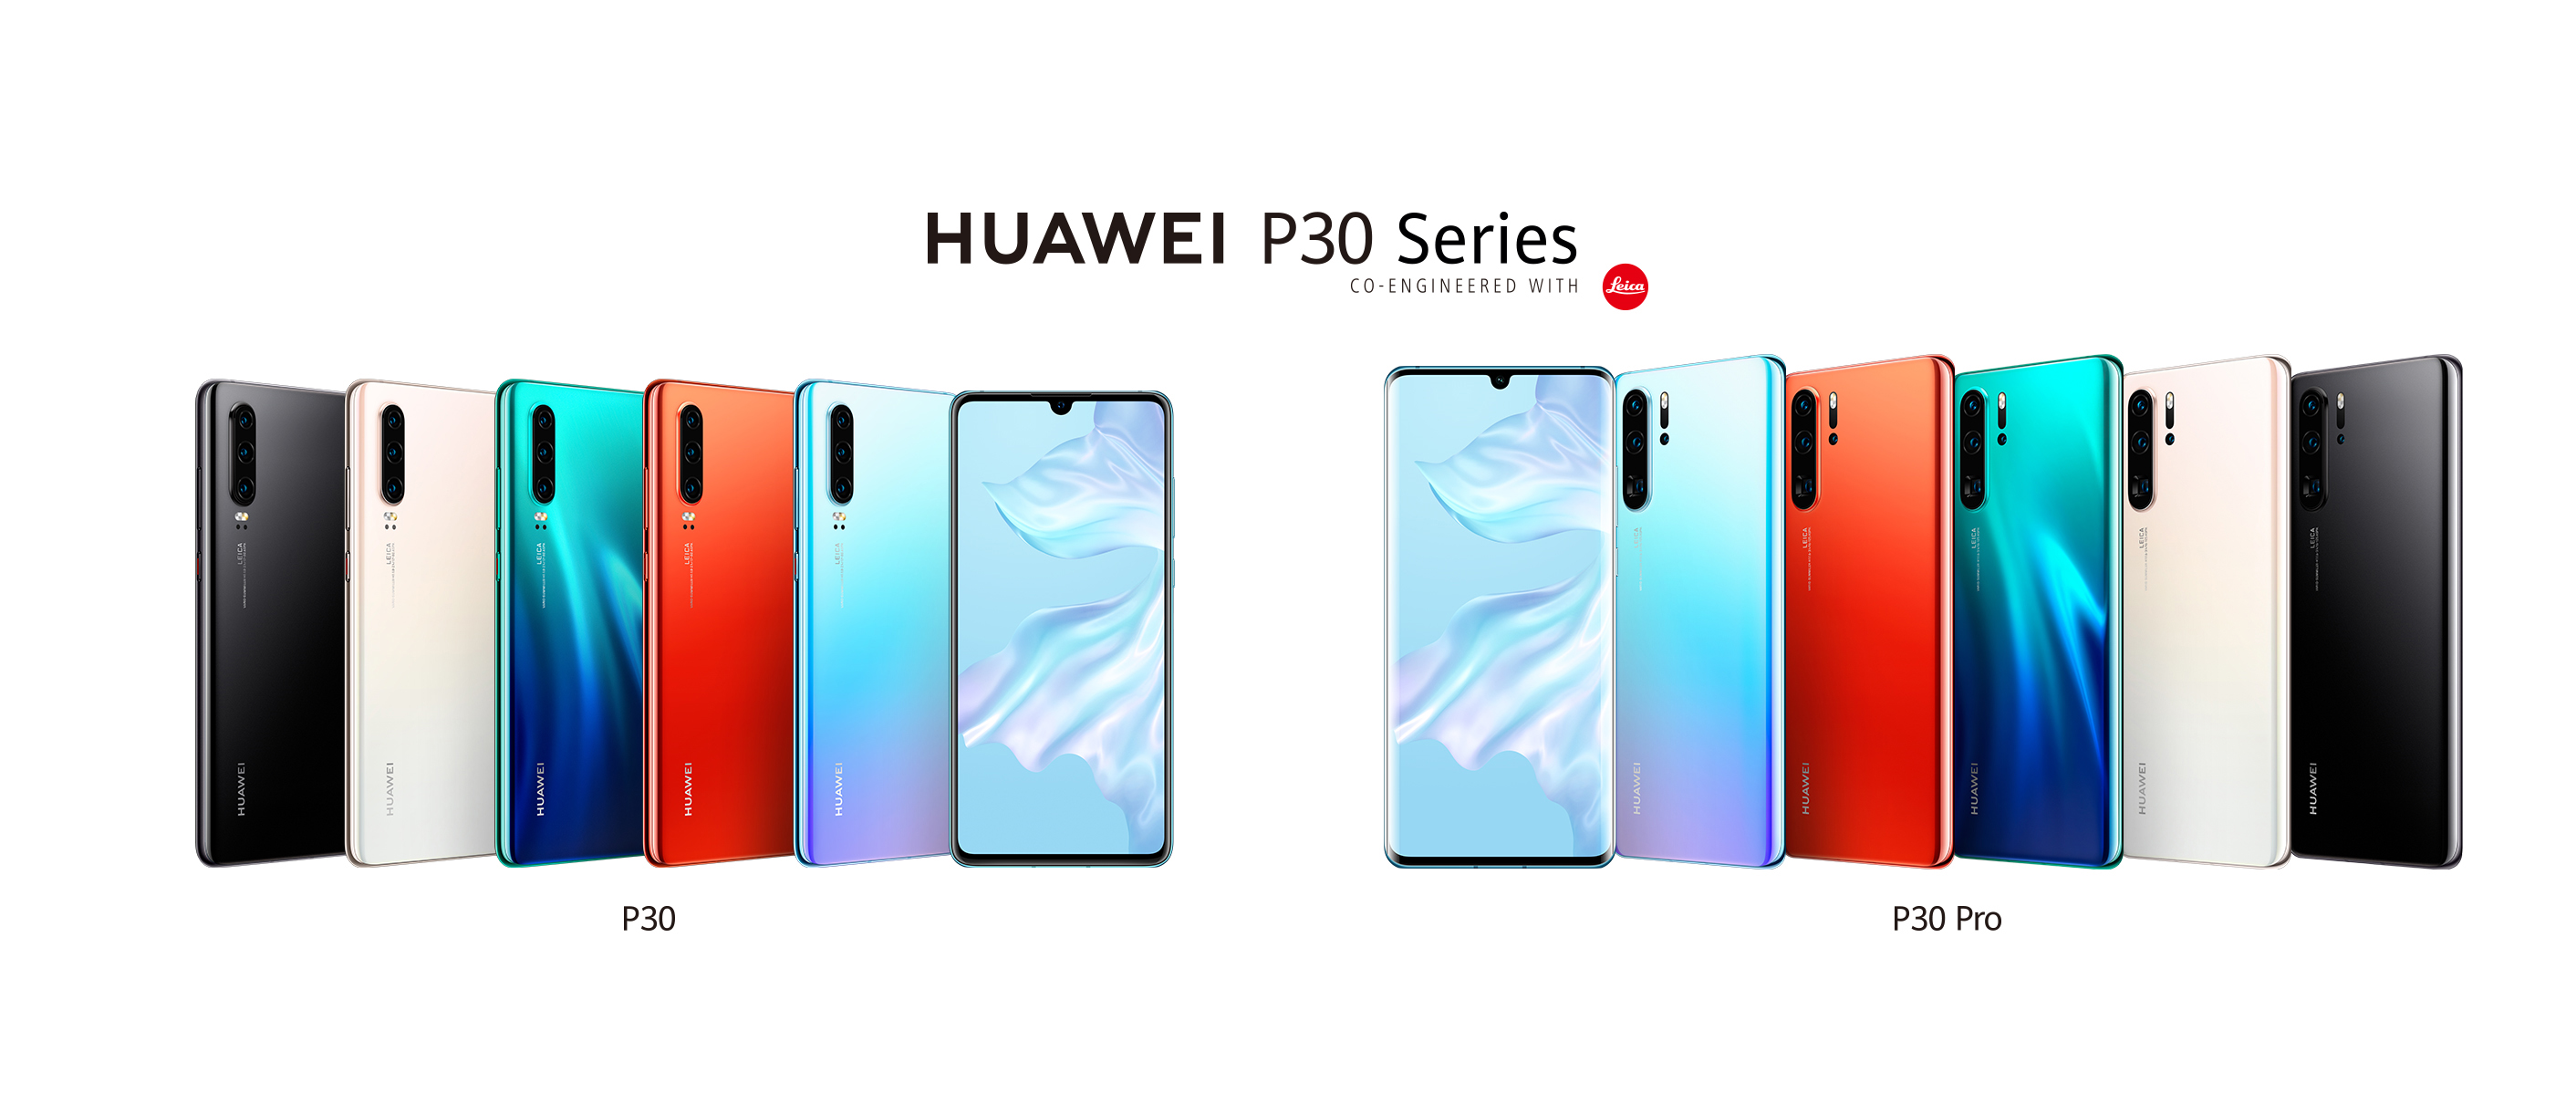 HHUAWEI P30 Pro proglašen najboljim pametnim telefonom na MWC-u u Shanghaiju